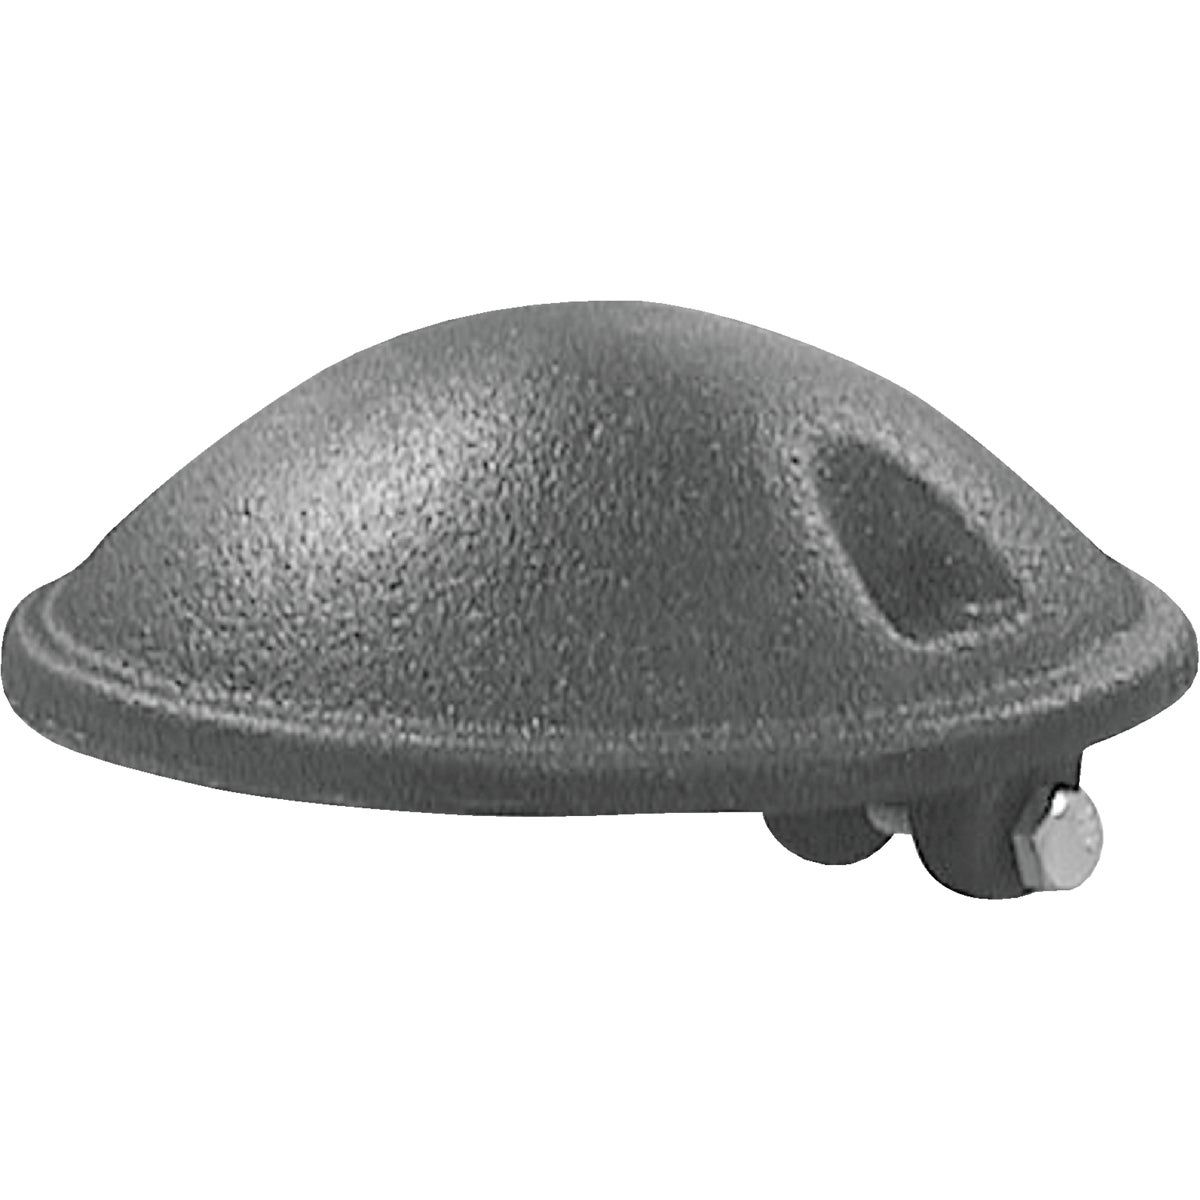 Item 401823, Mushroom cast iron vent cap for 3 In. or 4 In.